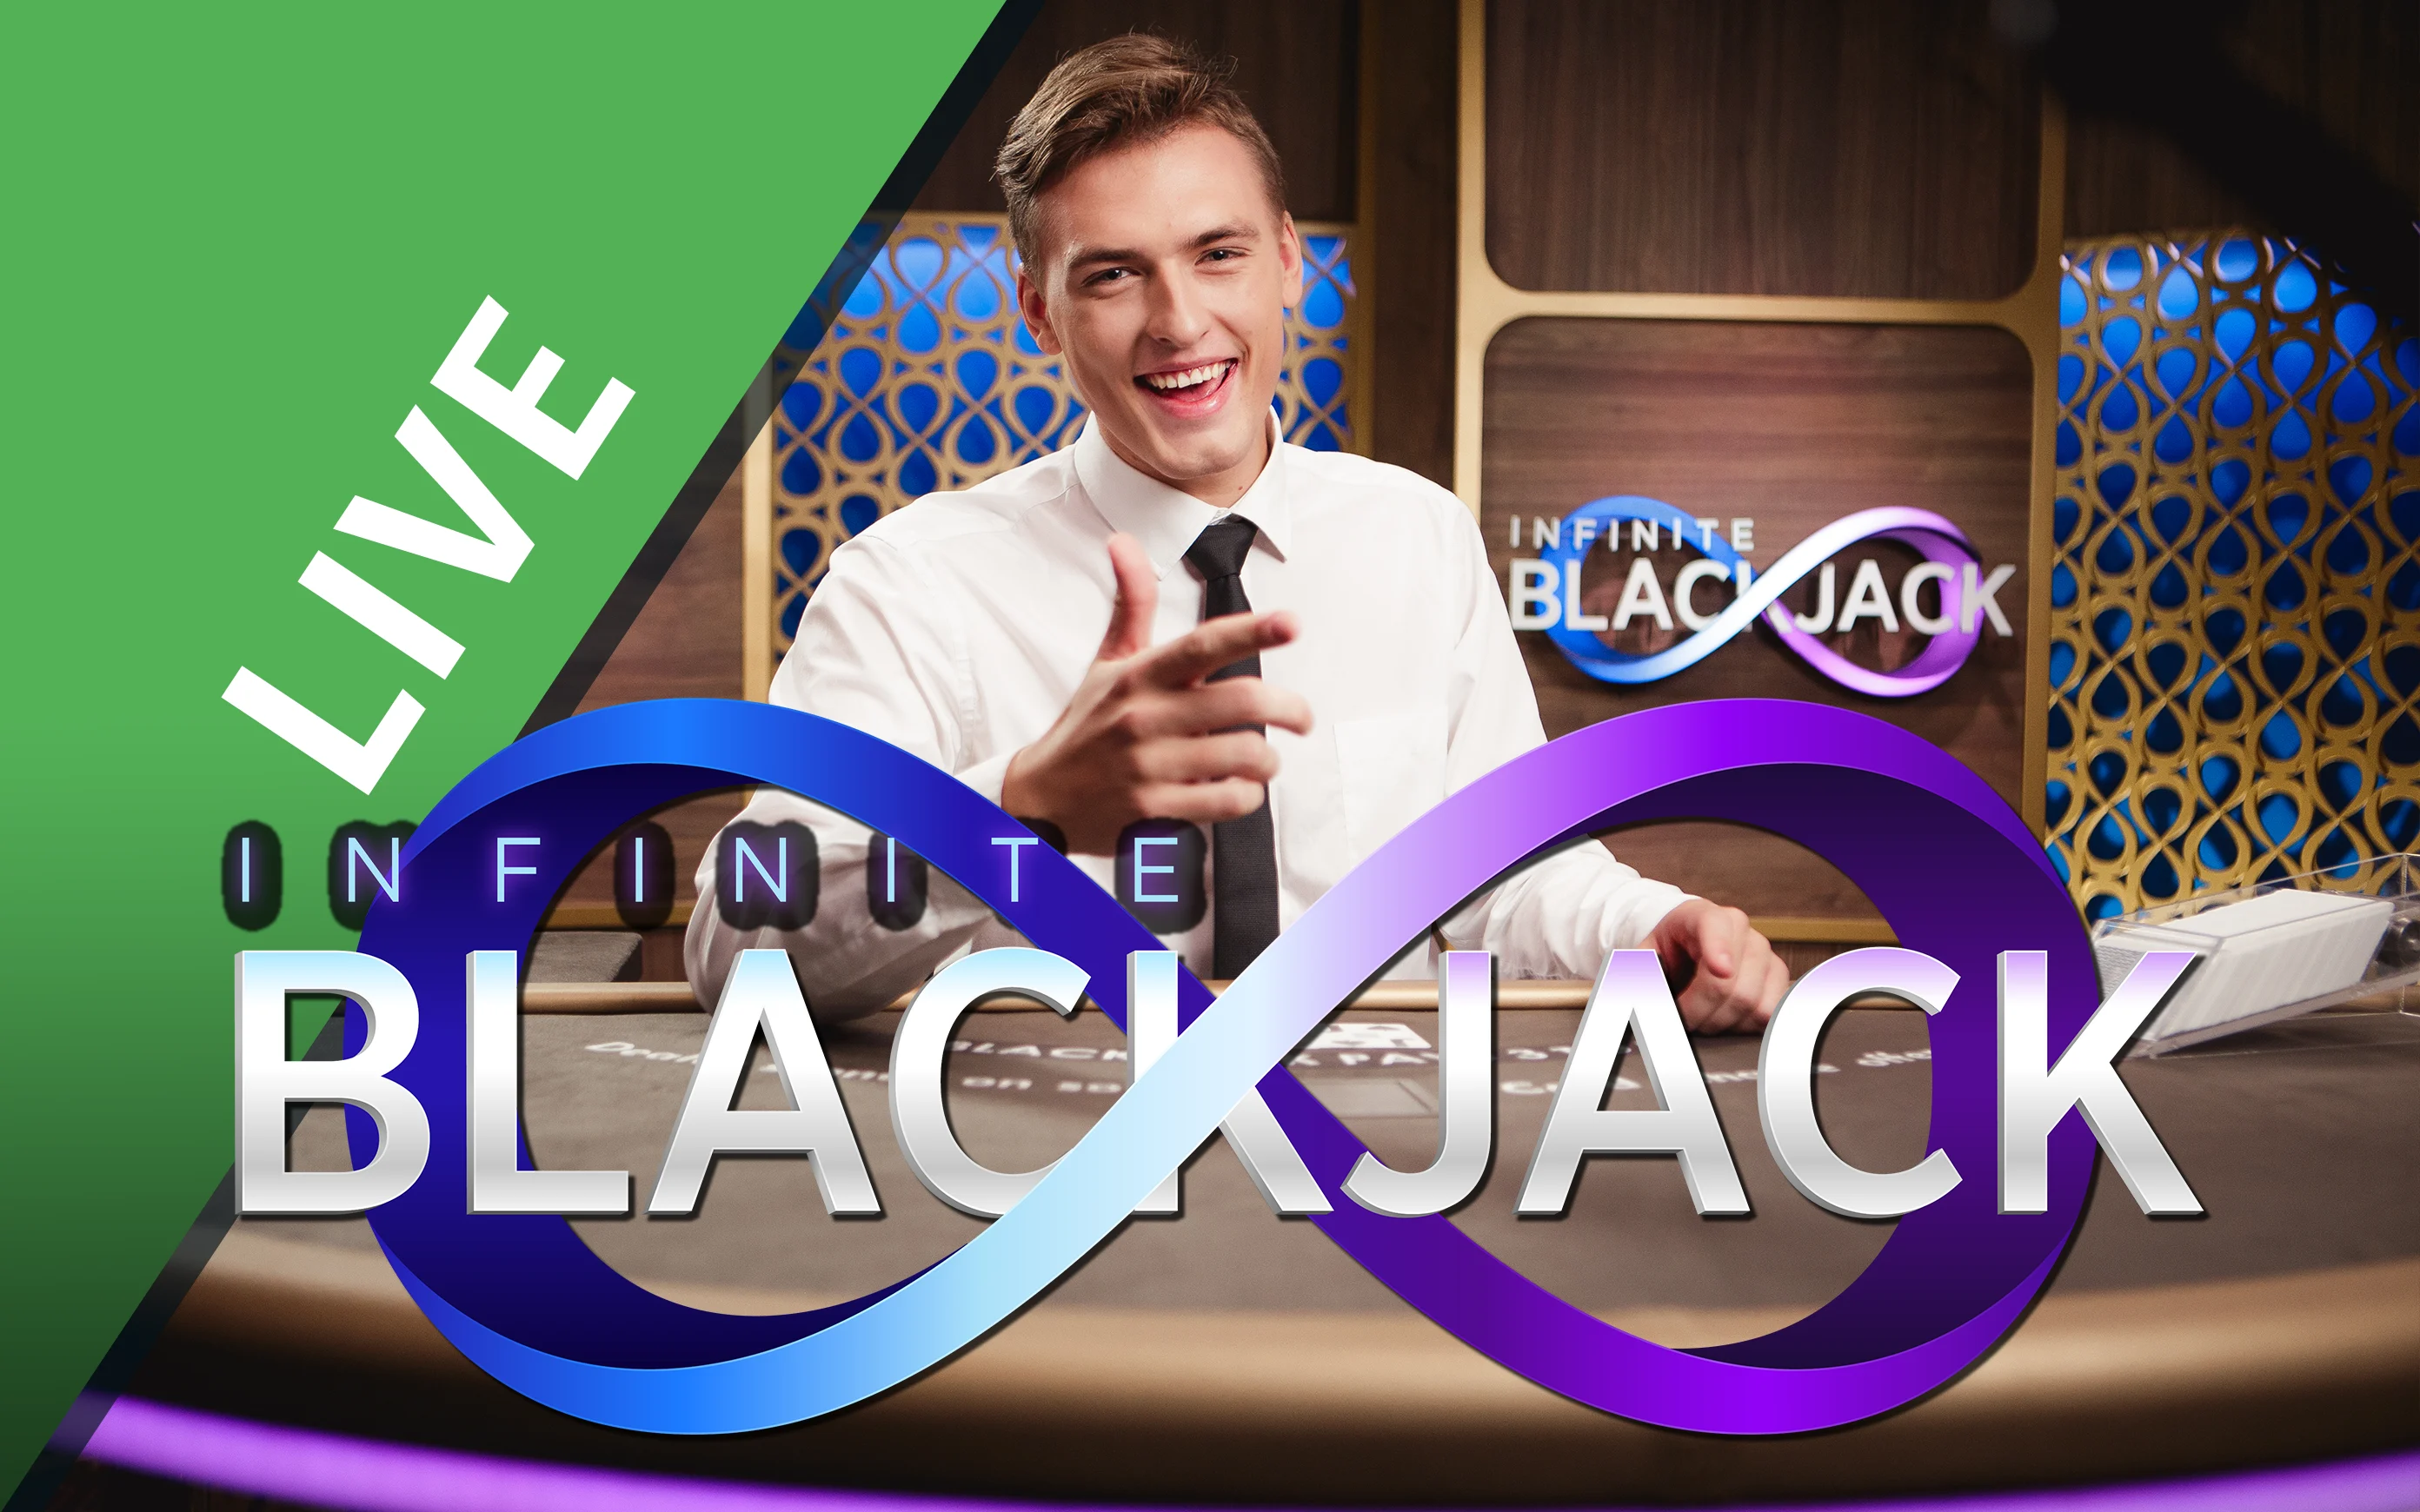 Starcasino.be online casino üzerinden Infinite Blackjack oynayın